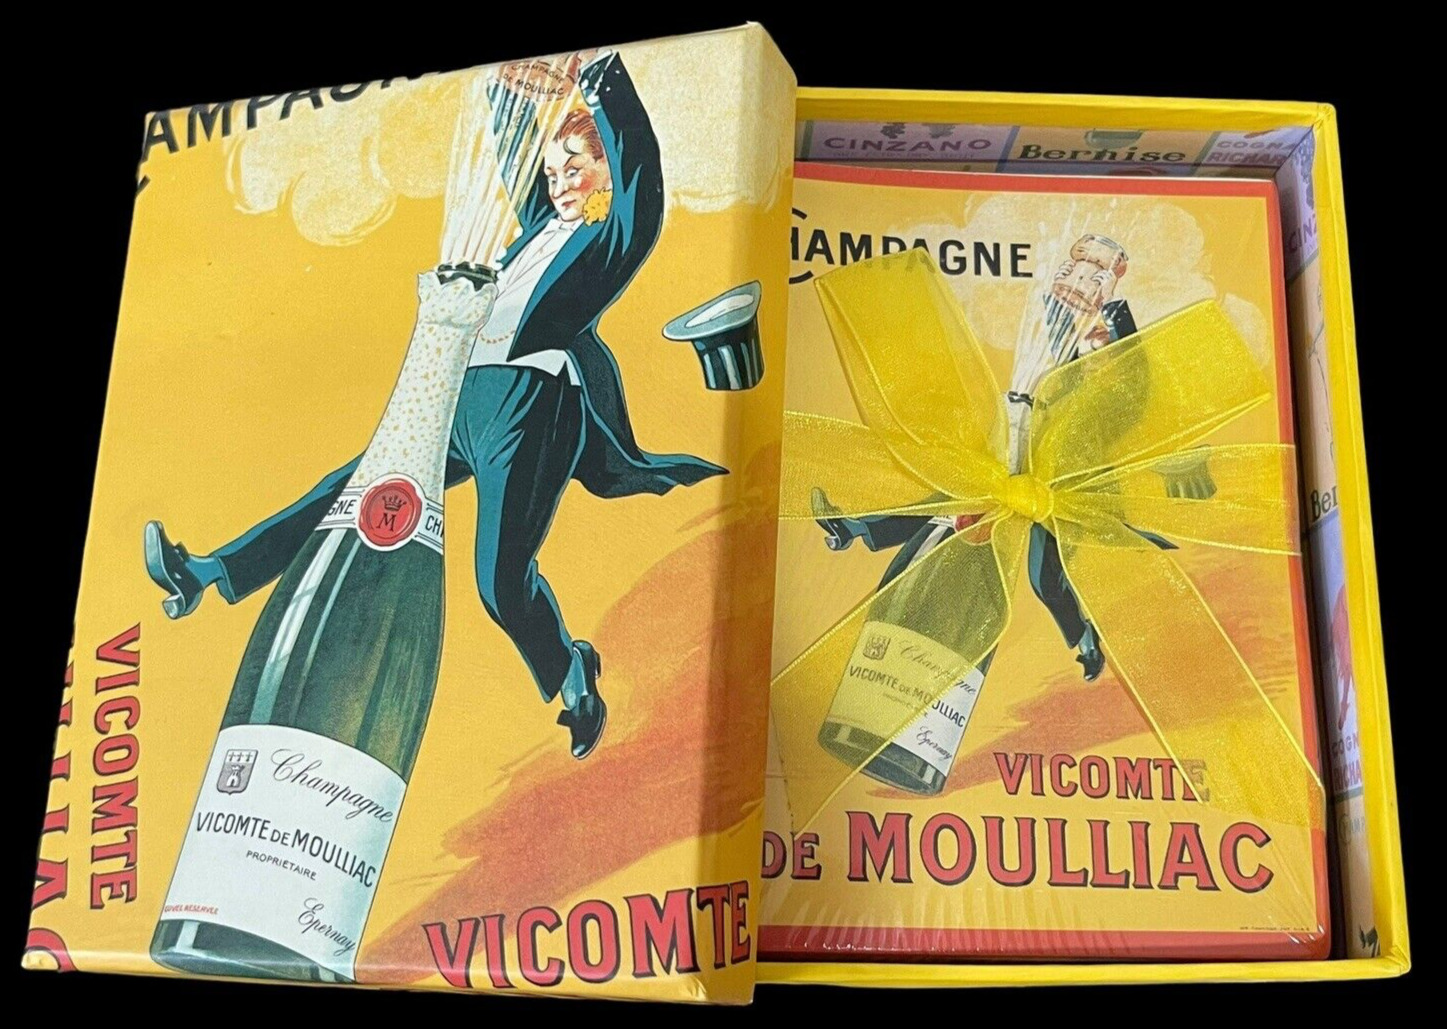 NEW Tri Coastal Design Box W/Note Cards 2003 Alcohol Theme Champagne Liquor Wine